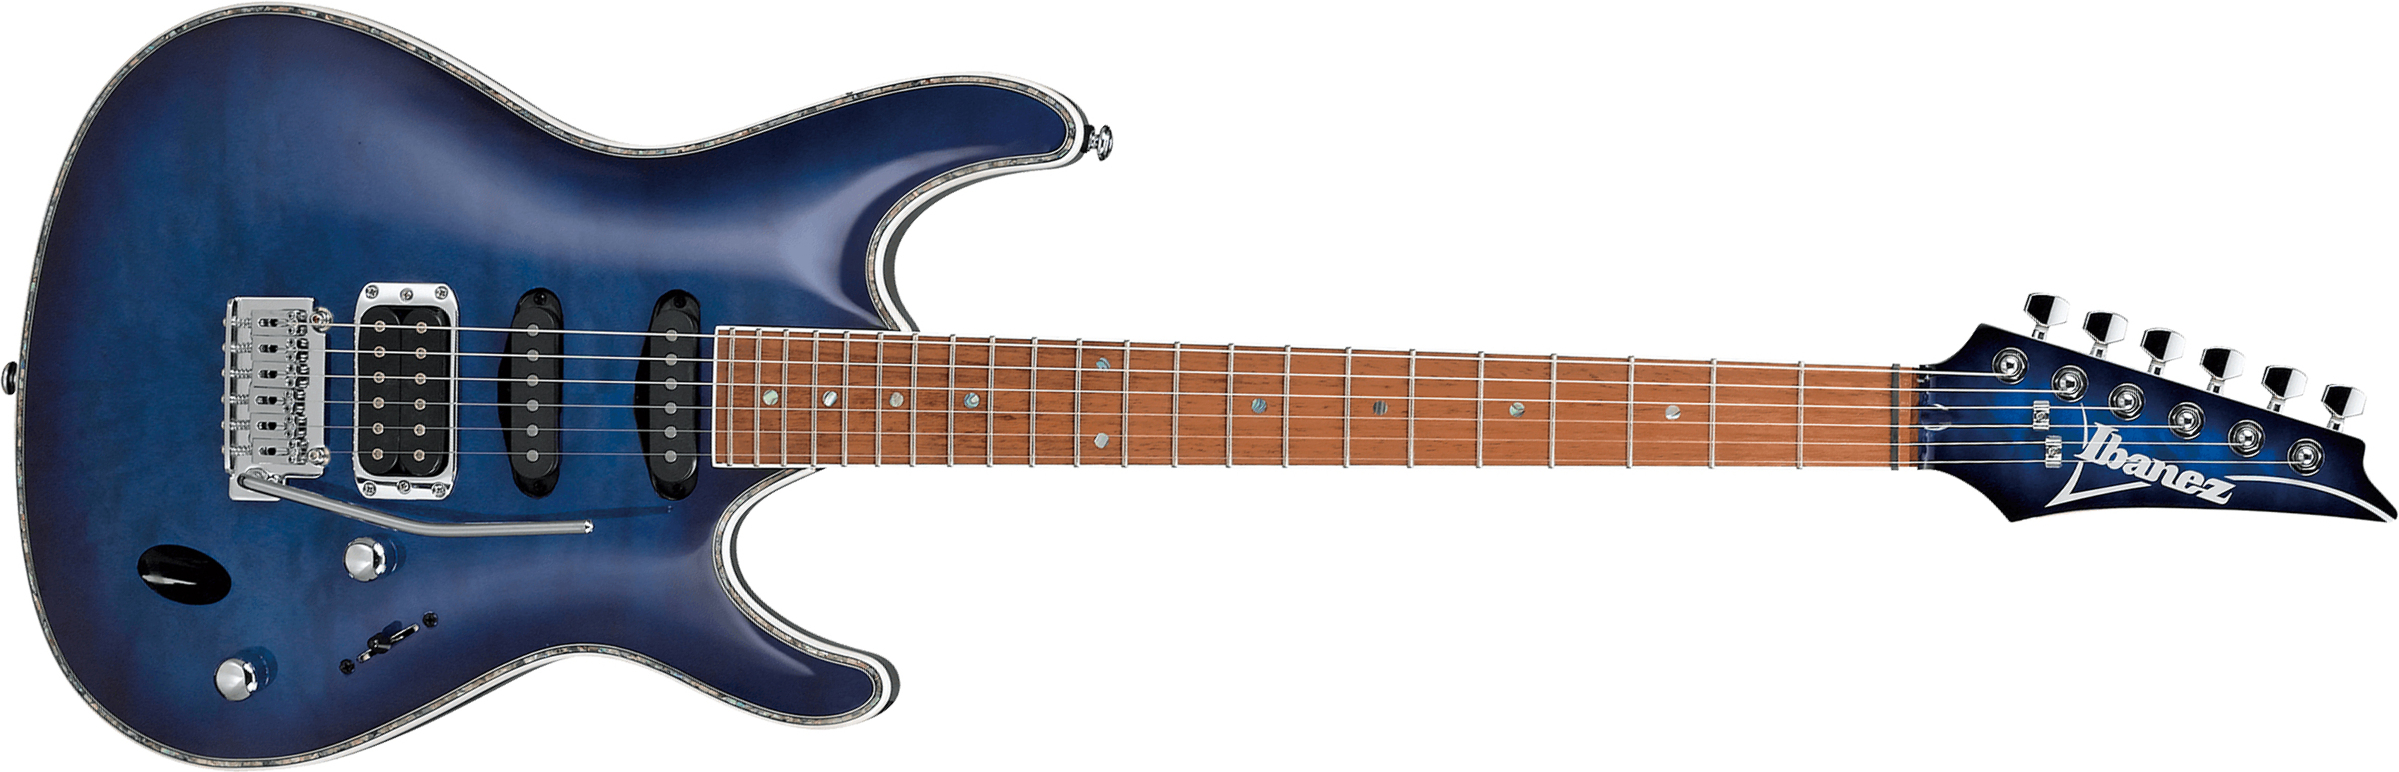 Ibanez Sa360nqm Spb Standard Hss Trem Jat - Sapphire Blue - Guitare Électrique Forme Str - Main picture